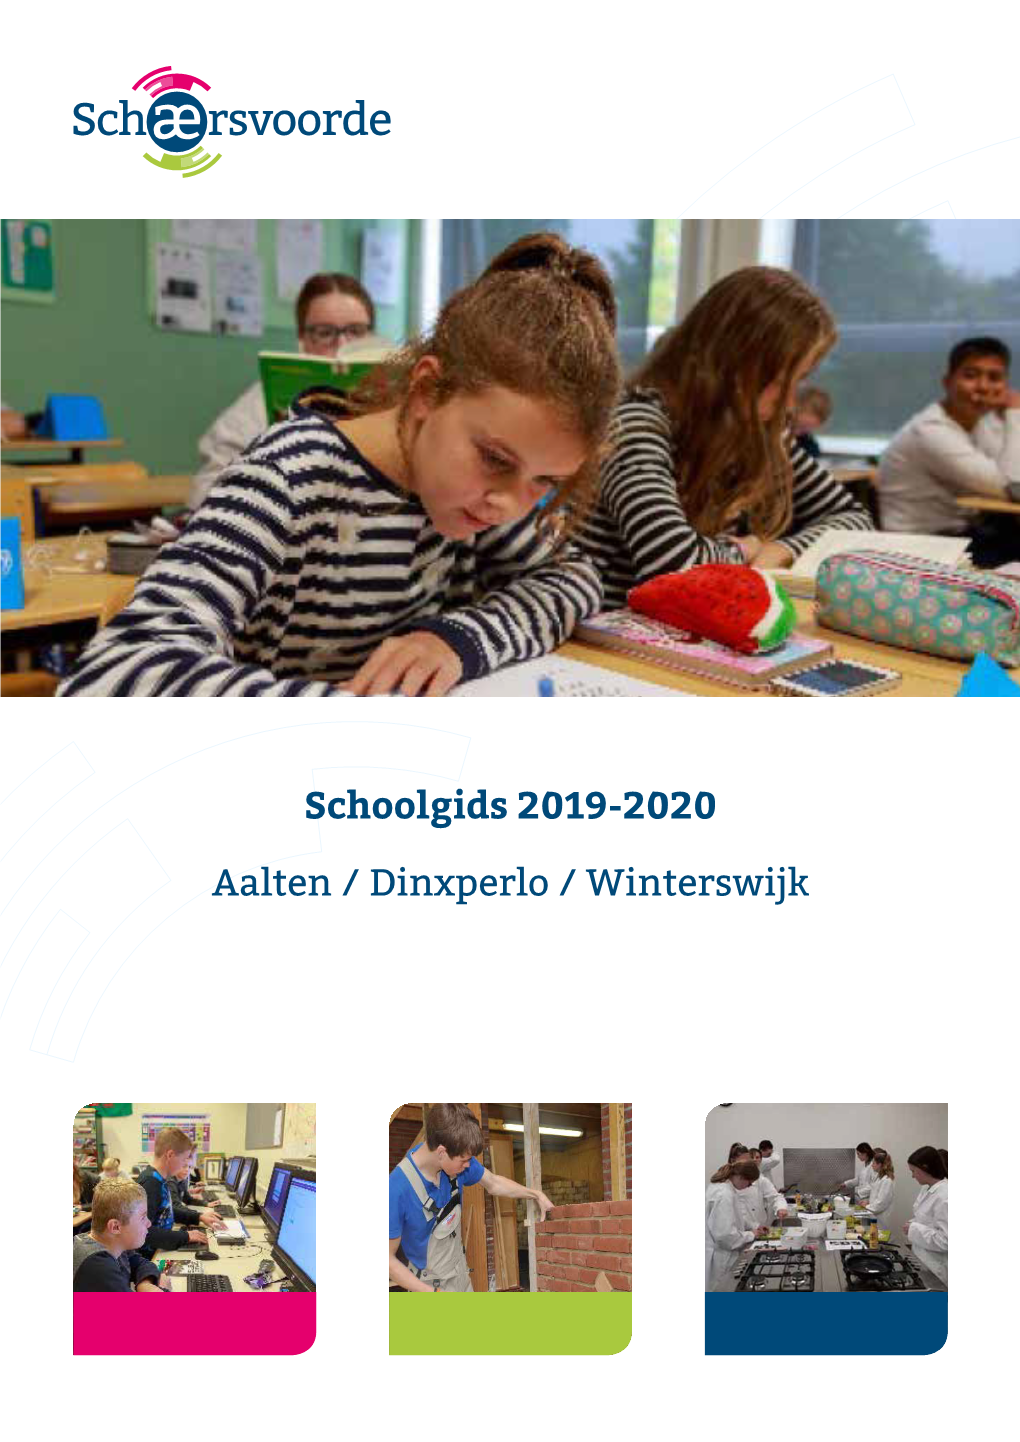 Schoolgids 2019-2020 Aalten / Dinxperlo / Winterswijk